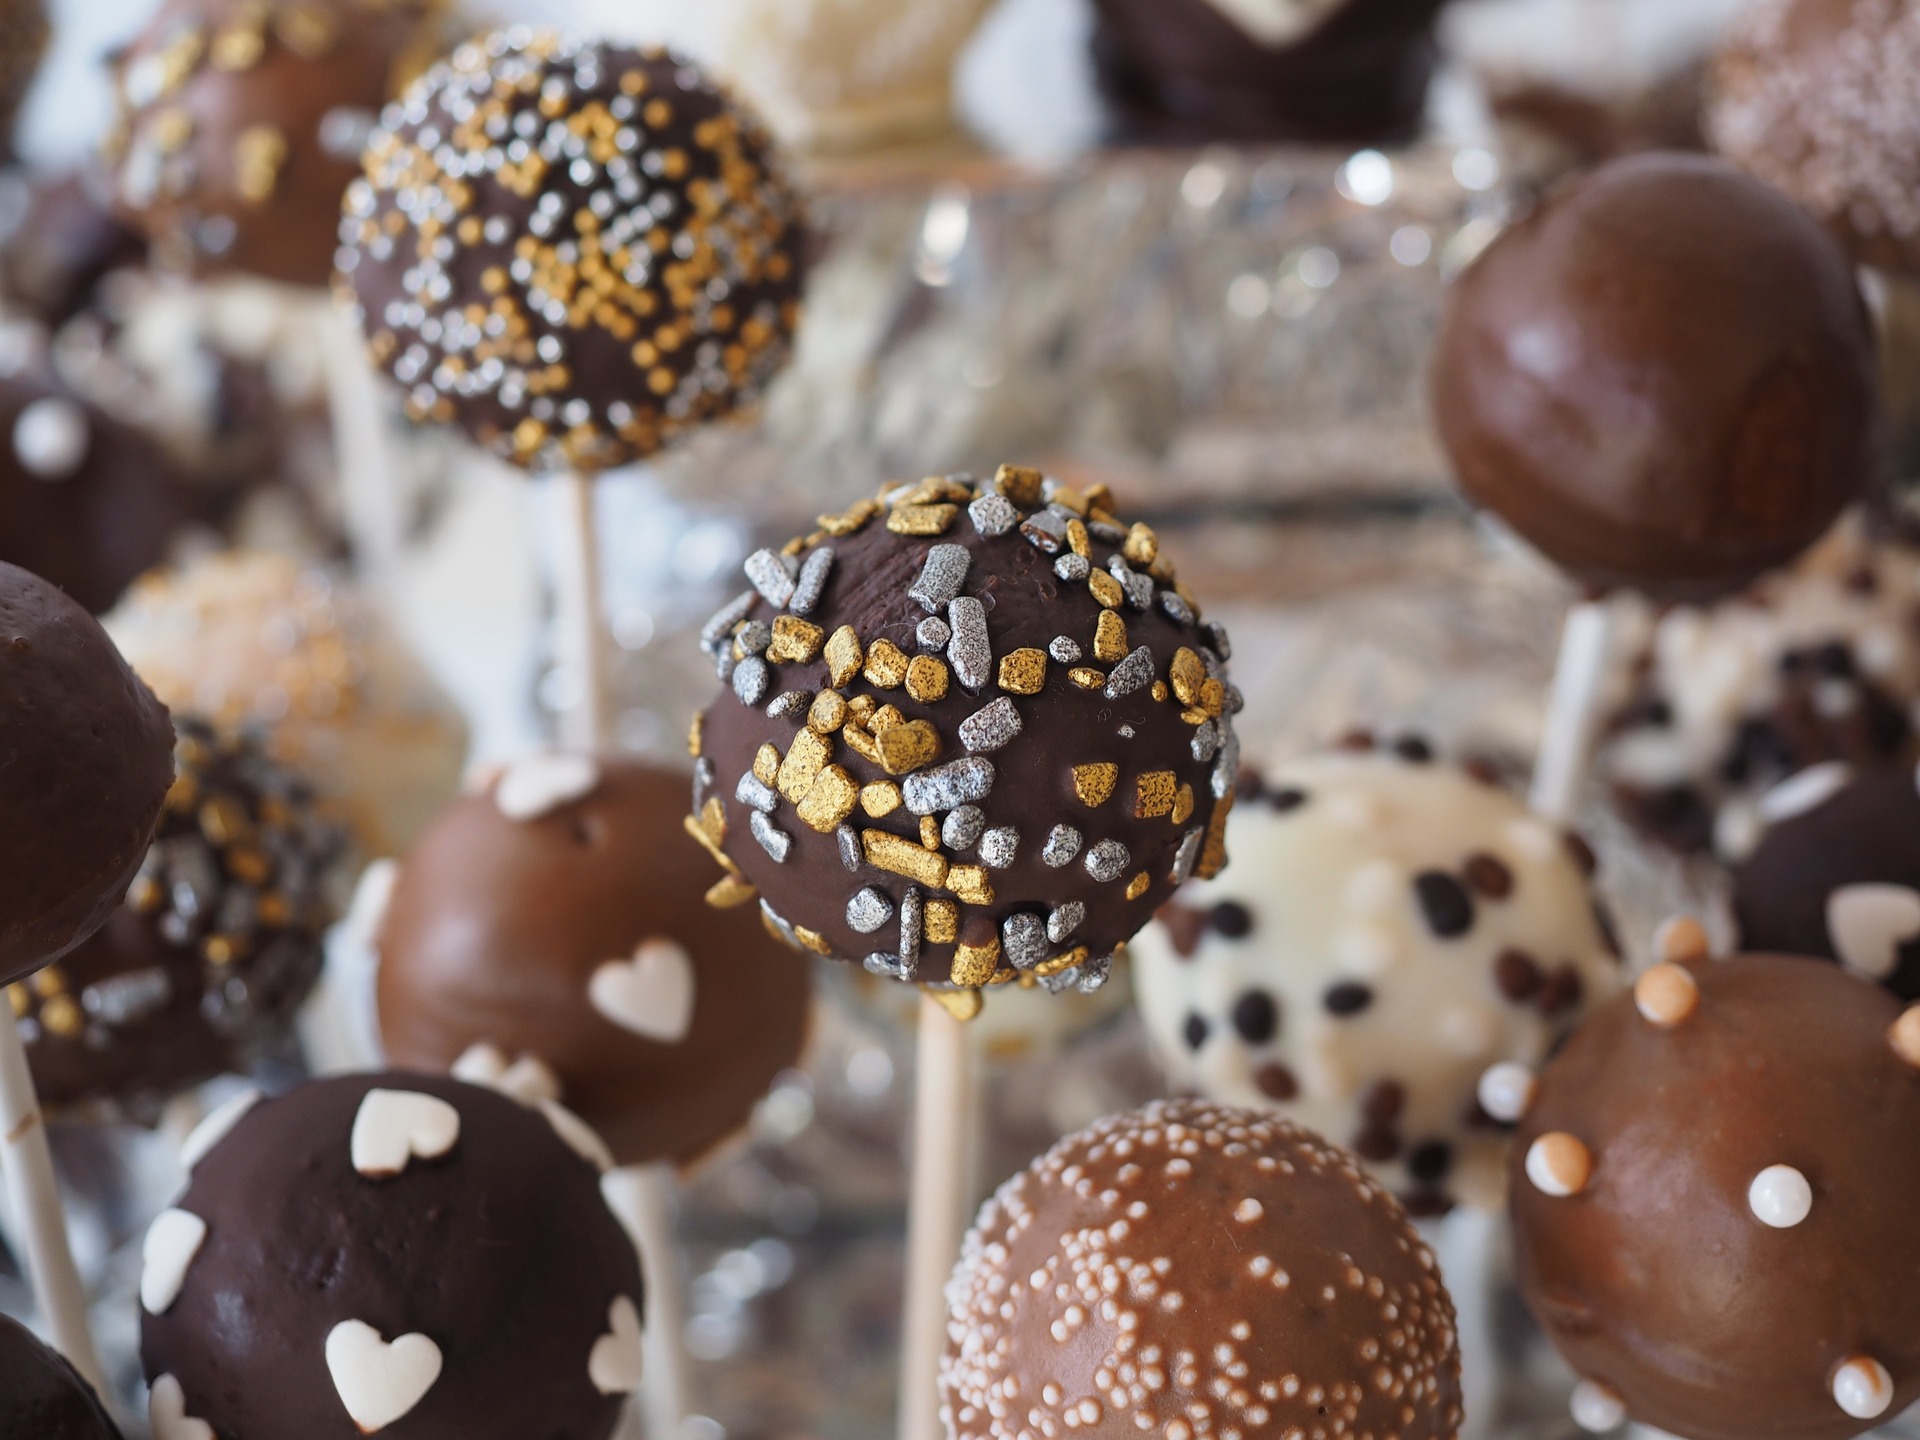 Słodycze i zdrowie: Jak znaleźć równowagę między przyjemnością a dobrą kondycją?